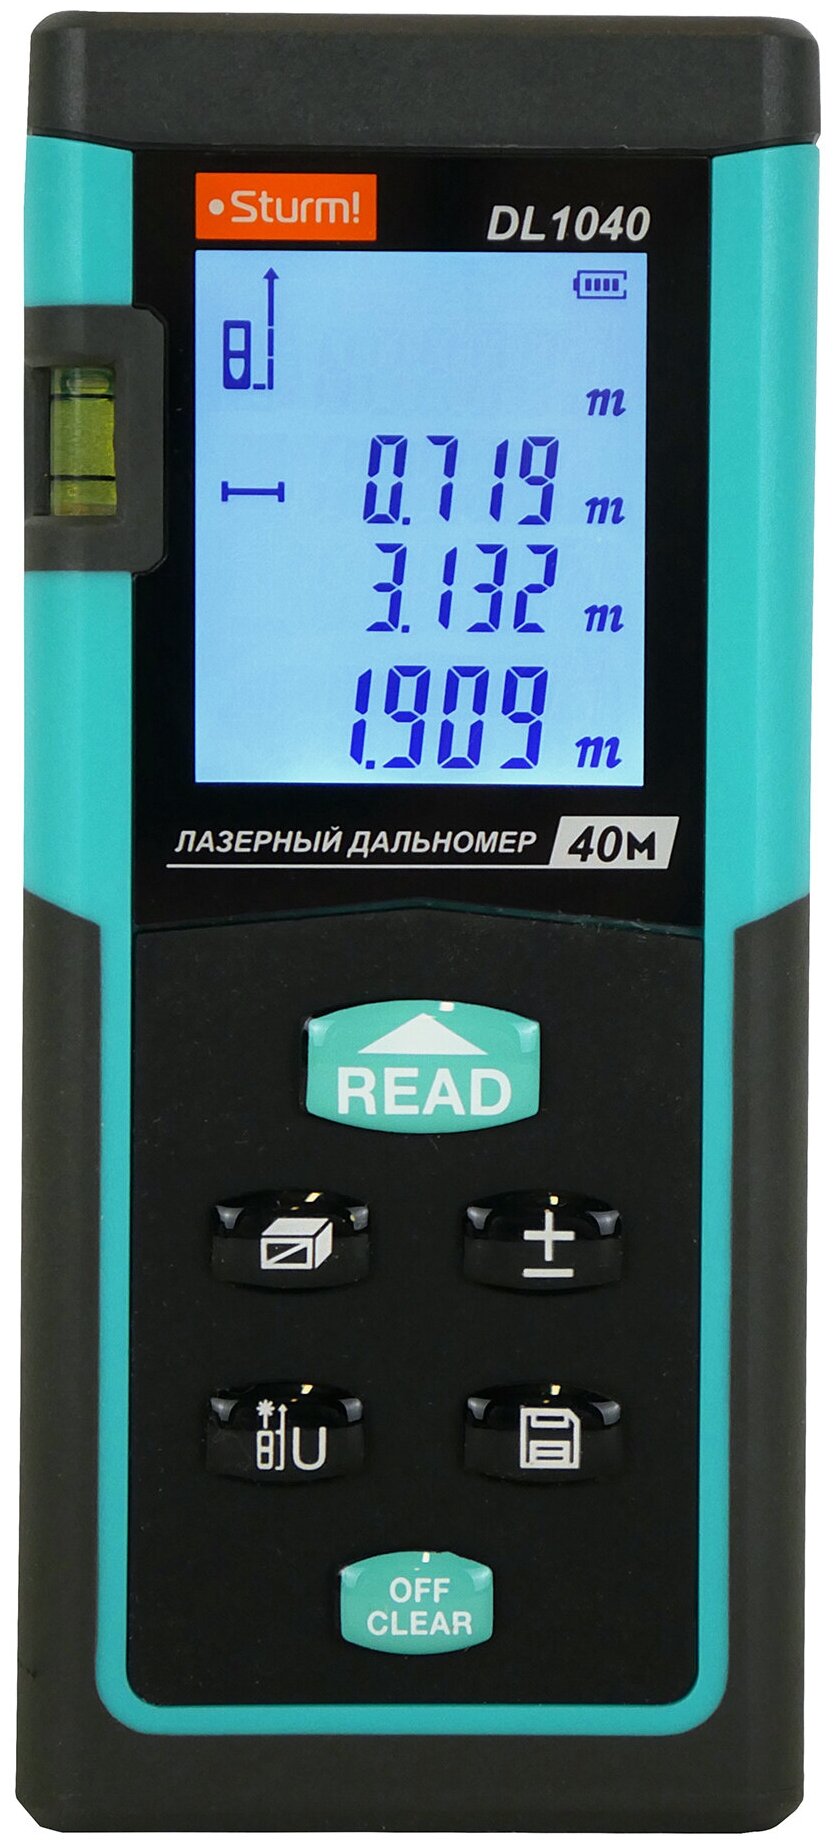 Дальномер лазерный 0,05-40м, LCD дисплей, встроенный уровень, чехол, Sturm!